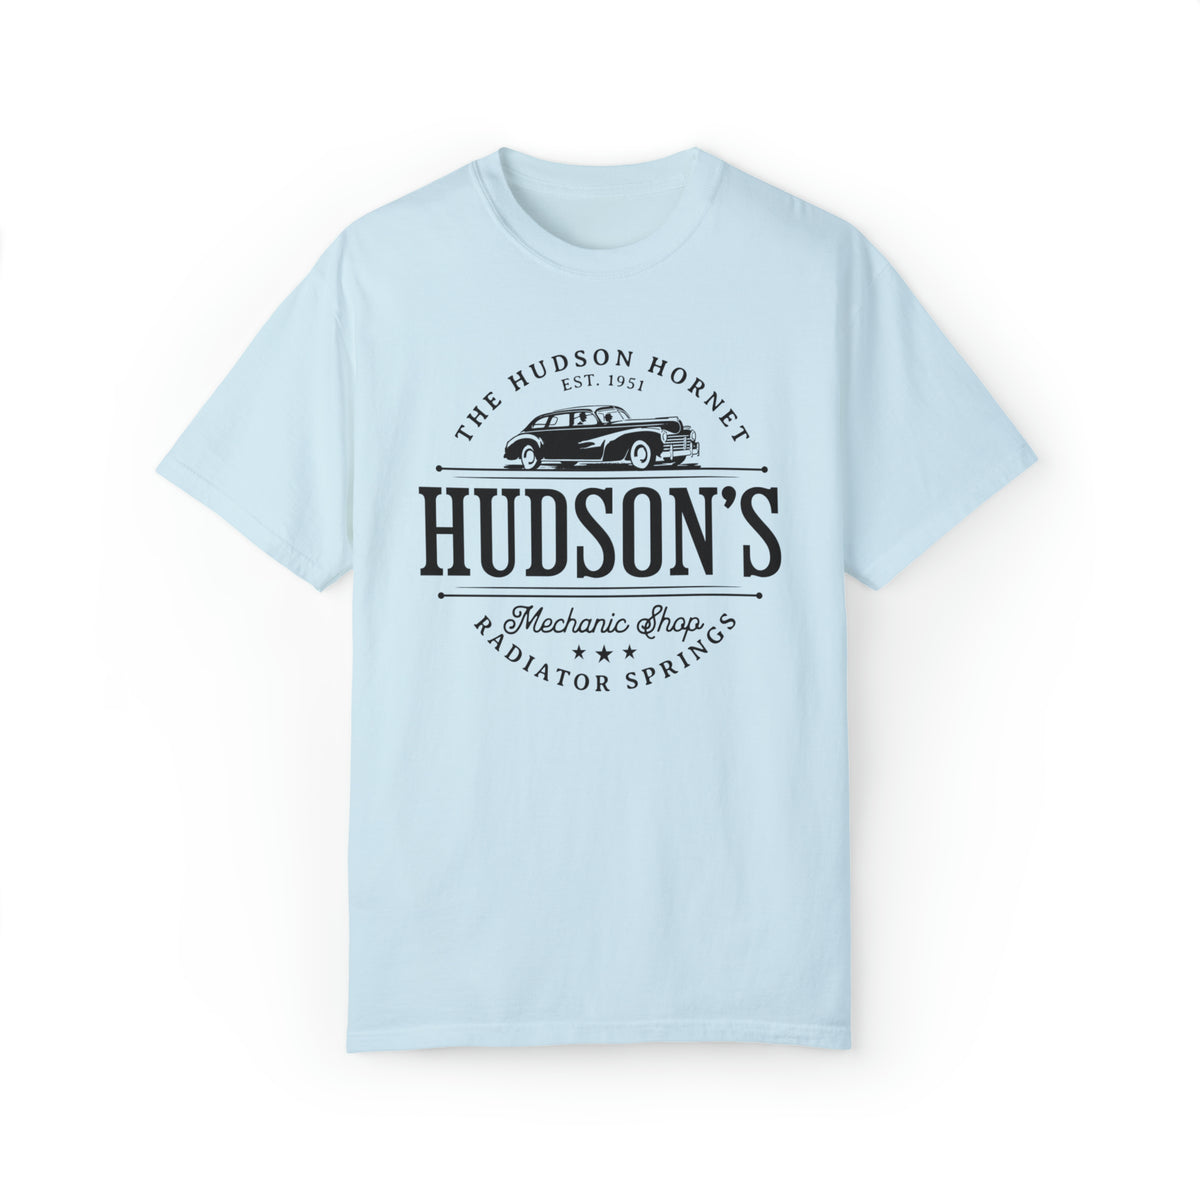 Hudson's Mechanic Shop Comfort Colors Unisex Garment-Dyed T-shirt